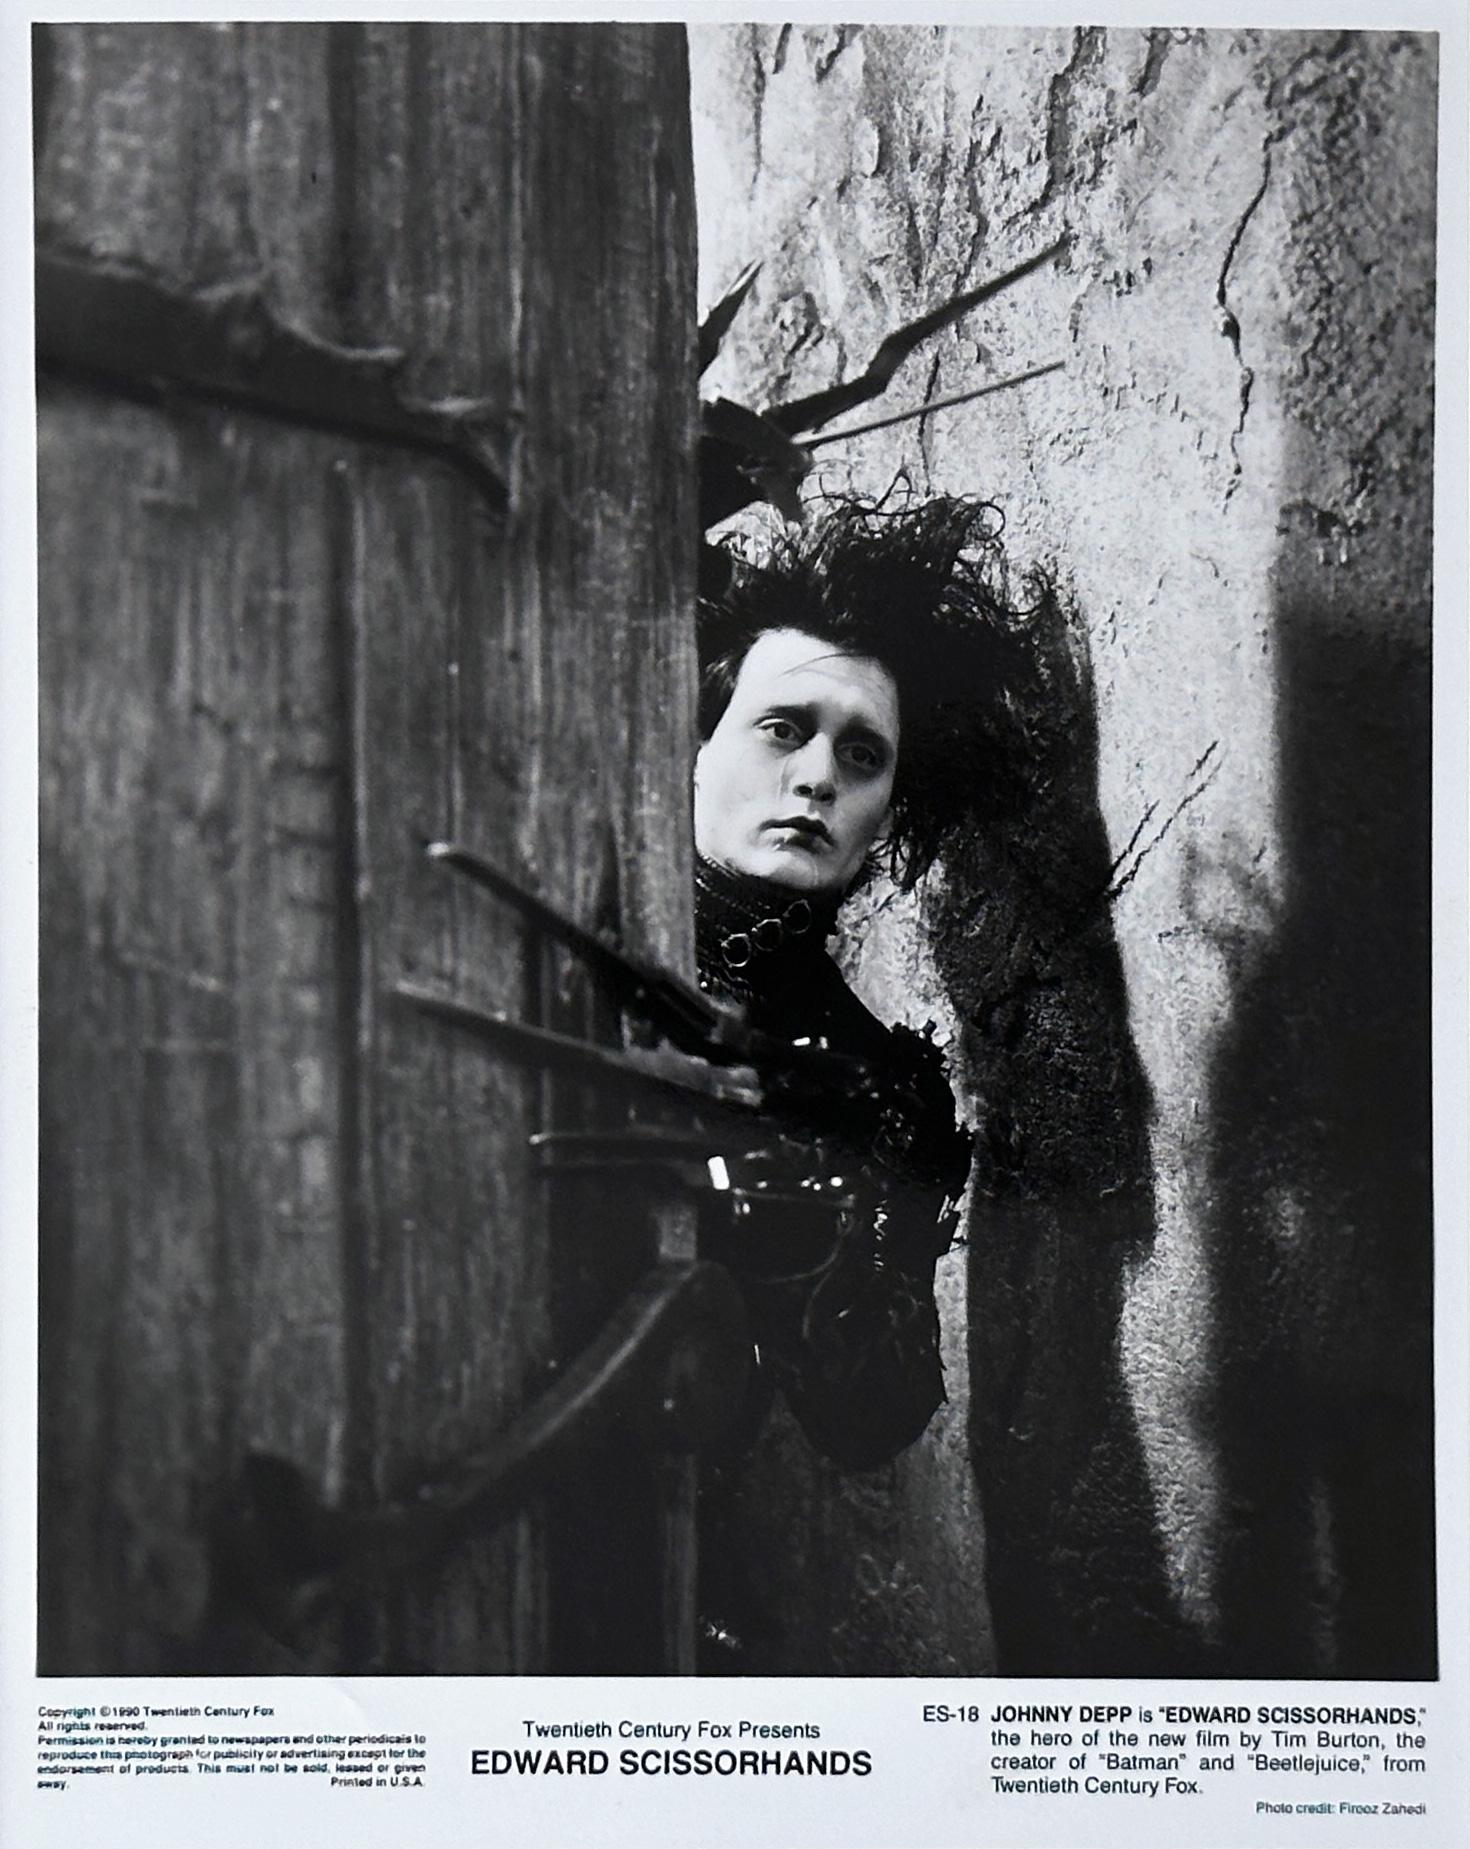 Original 20th Century Fox 8x10 inches Publicity Still pour le classique Edward Scissorhands (1990) de Tim Burton avec une magnifique image de Johnny Depp.

Les photos de publicité (film/production) ont été créées pour aider les studios à promouvoir